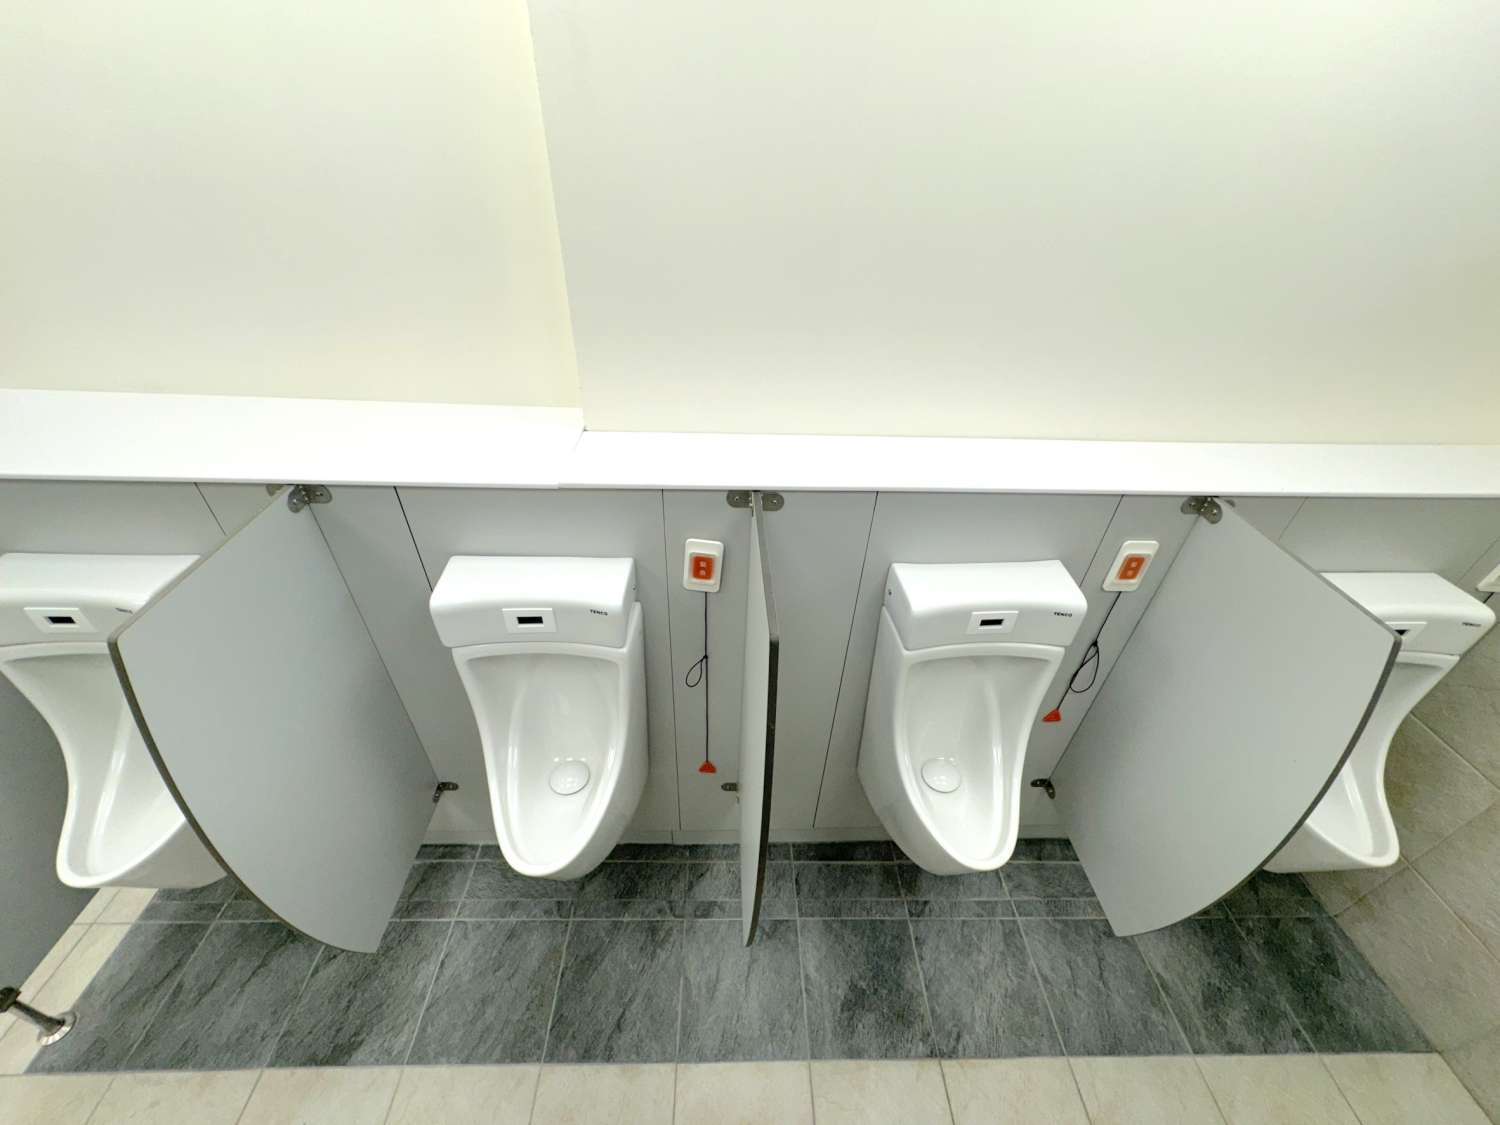 新竹市政府全力提升公廁環境品質 打造智慧與友善的如廁空間